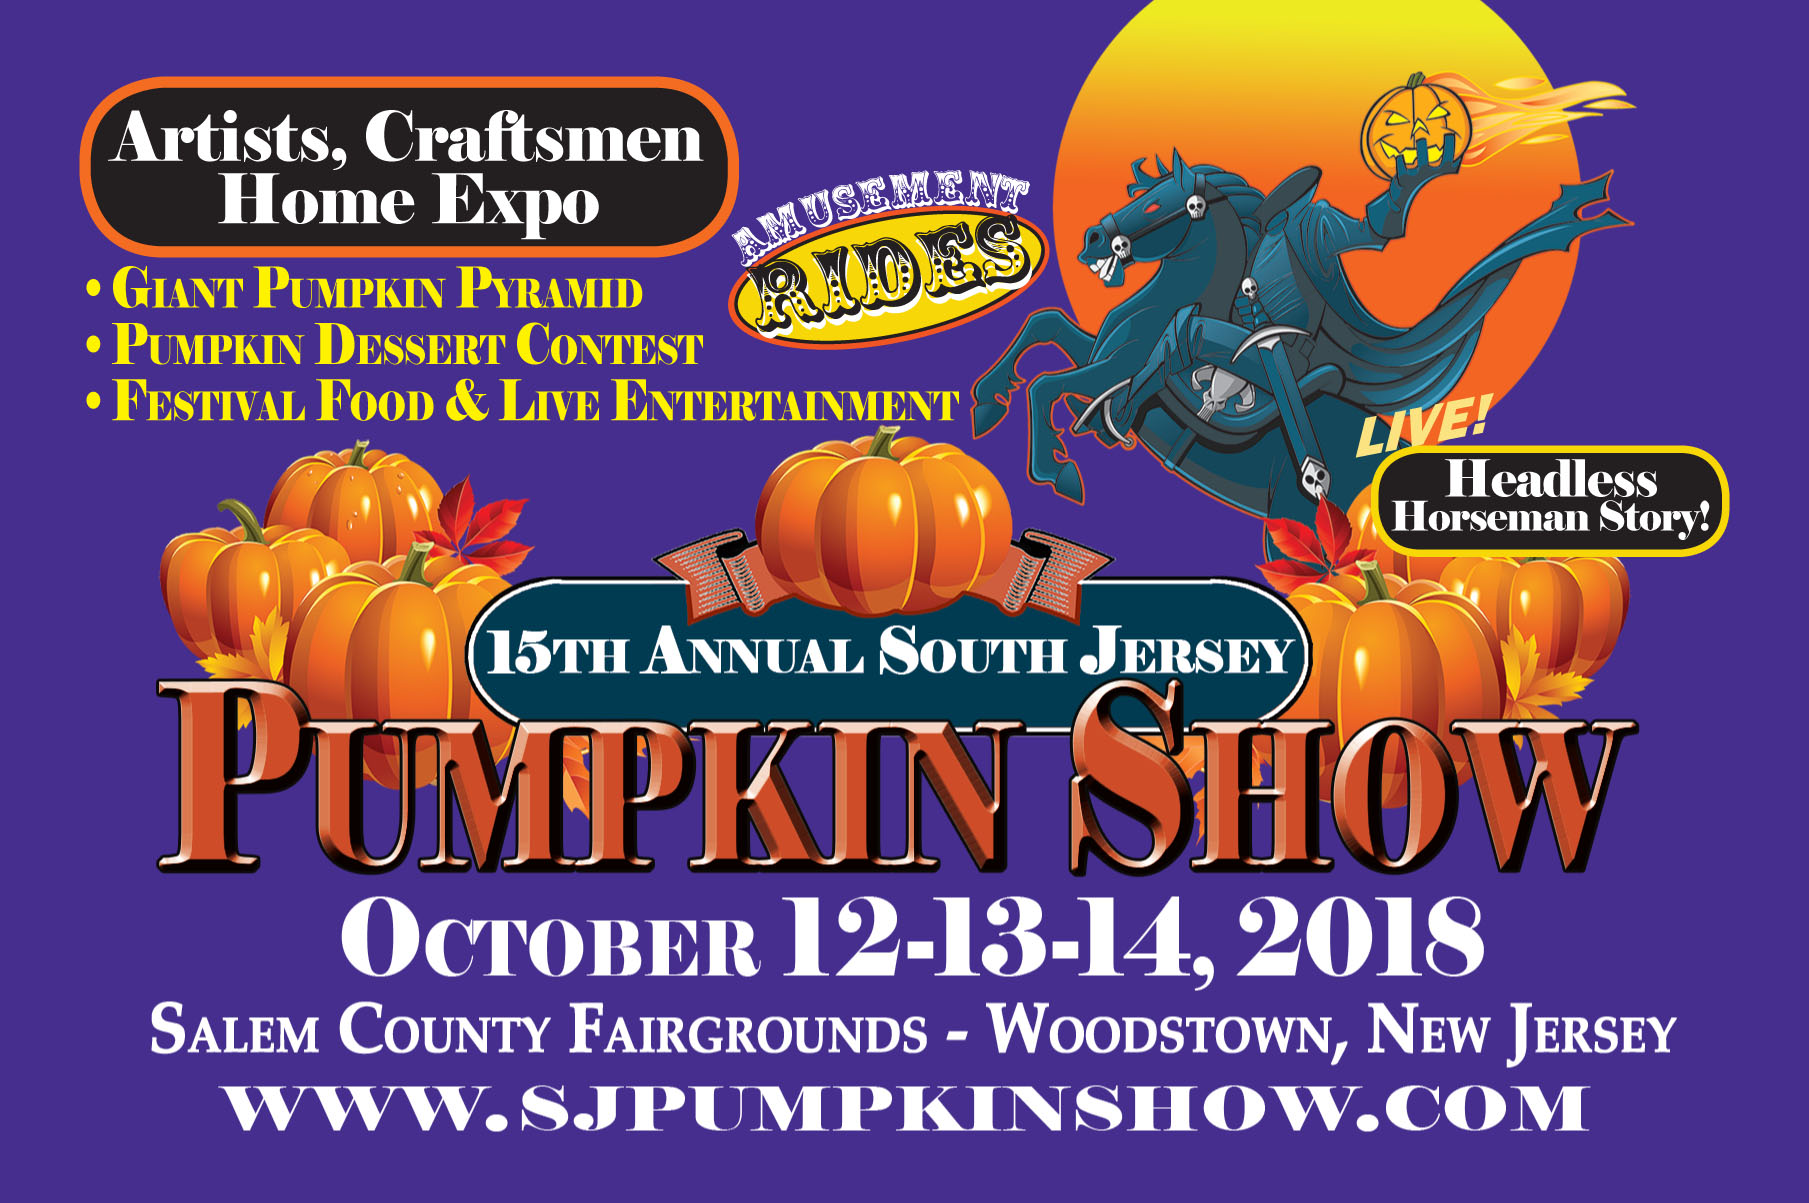 South Jersey Pumpkin Show Festival